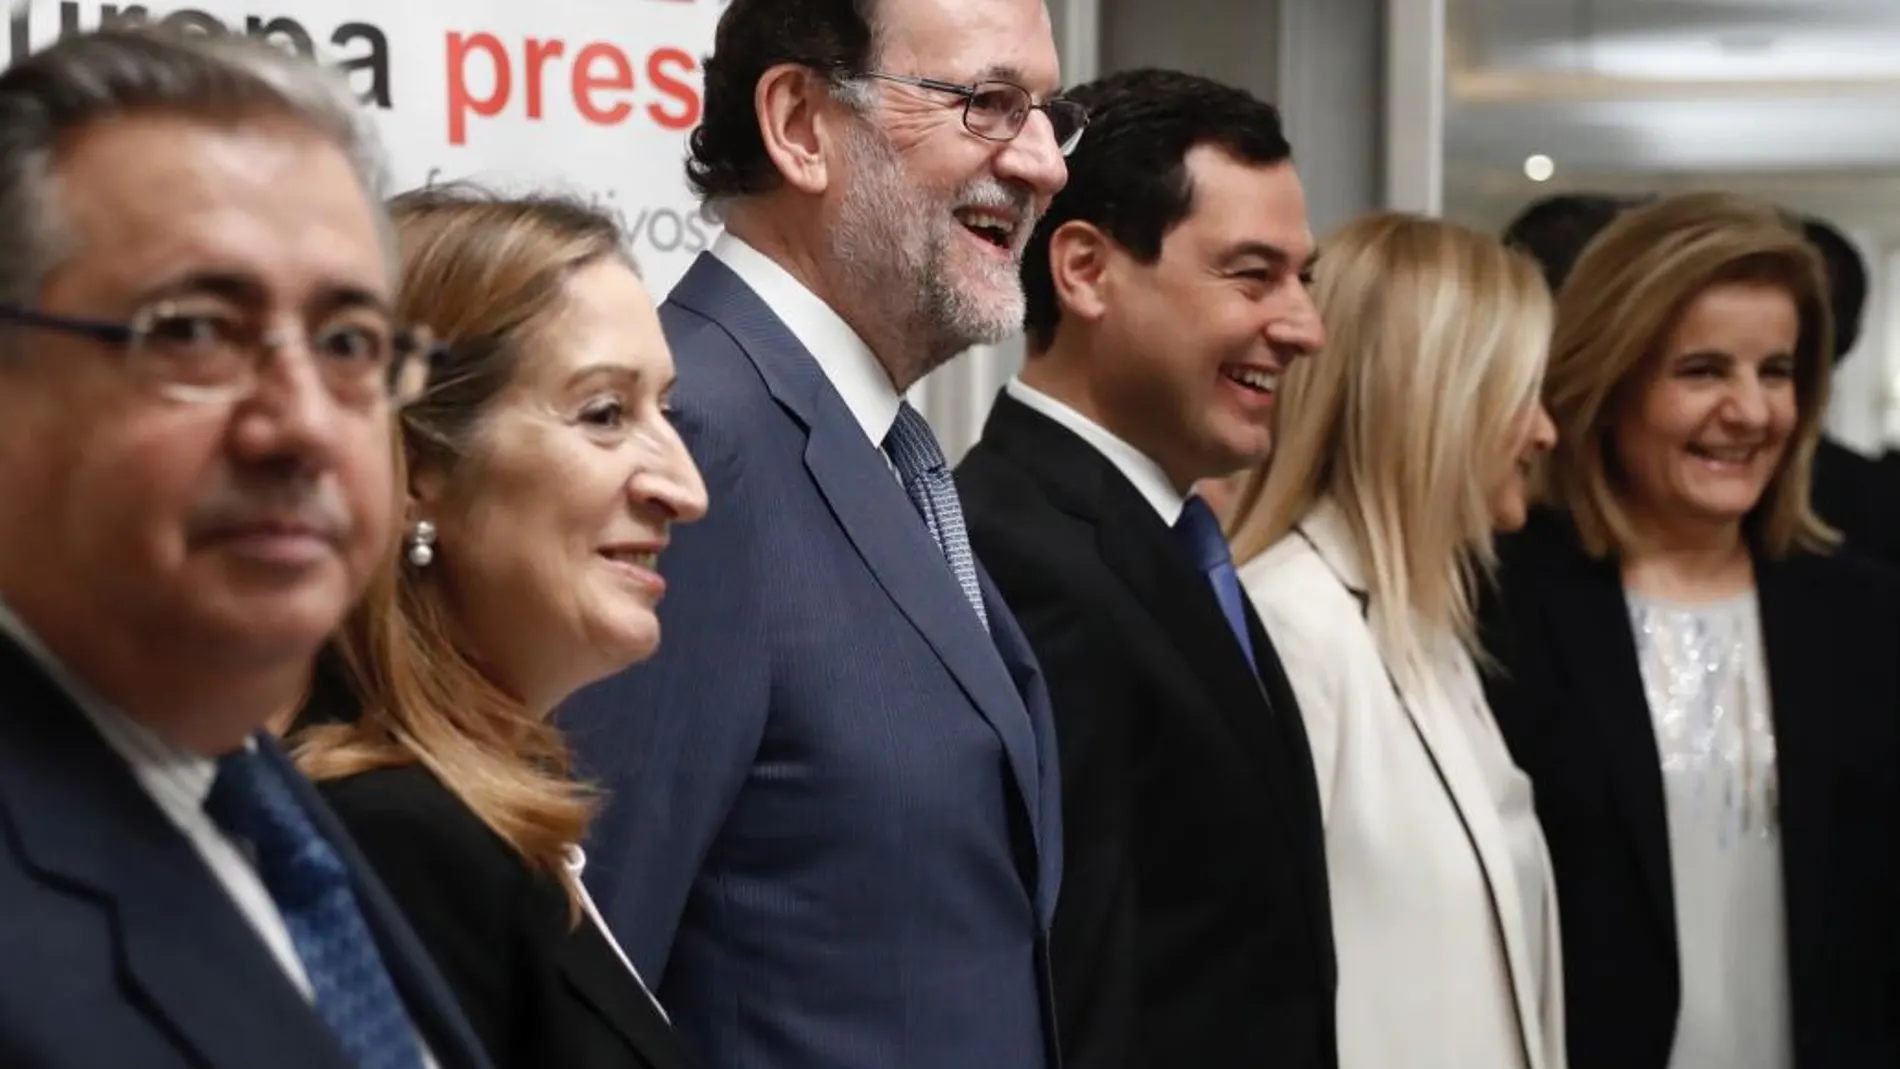 El presidente del Gobierno, Mariano Rajoy (3i), junto al presidente del PP andaluz, Juanma Moreno (3d); el ministro del Interior, Juan Ignacio Zoido (i); la presidenta del Congreso, Ana Pastor (2i); la presidenta de la Comunidad de Madrid, Cristina Cifuentes (2d), y la ministra de Empleo y Seguridad Social, Fátima Báñez (d).